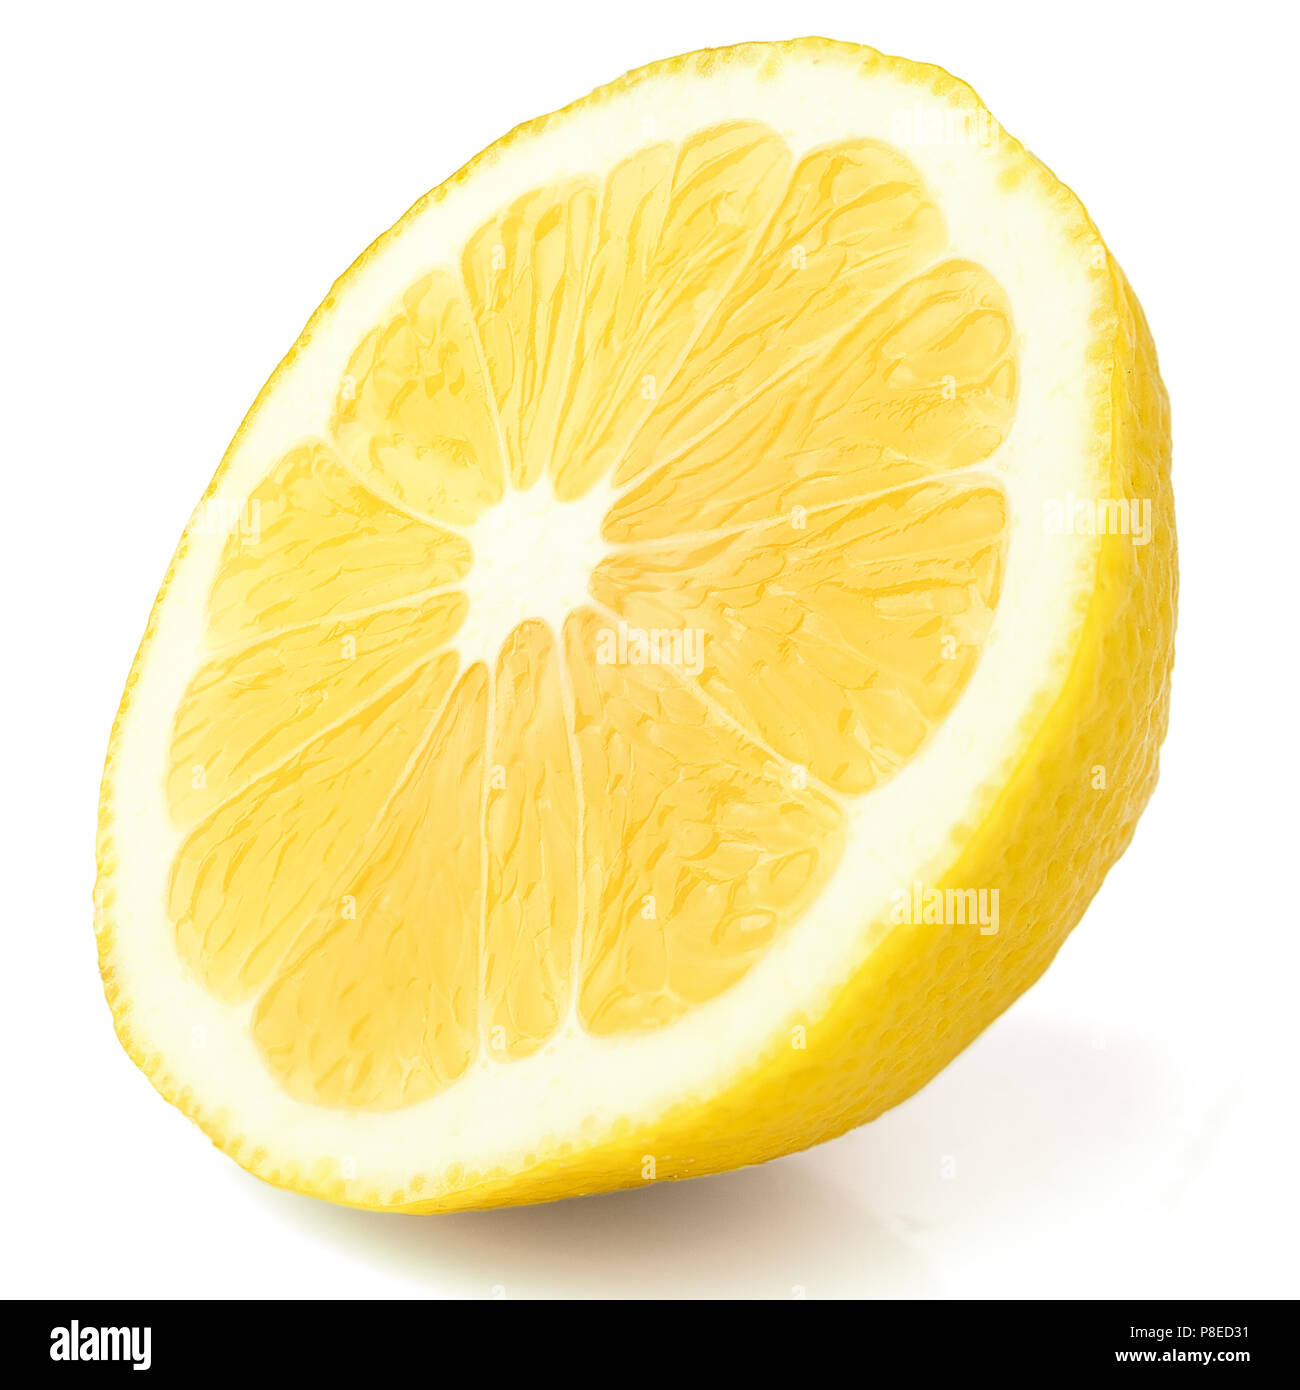 Tranche de citron jaune juteux, fond blanc, isolé Banque D'Images